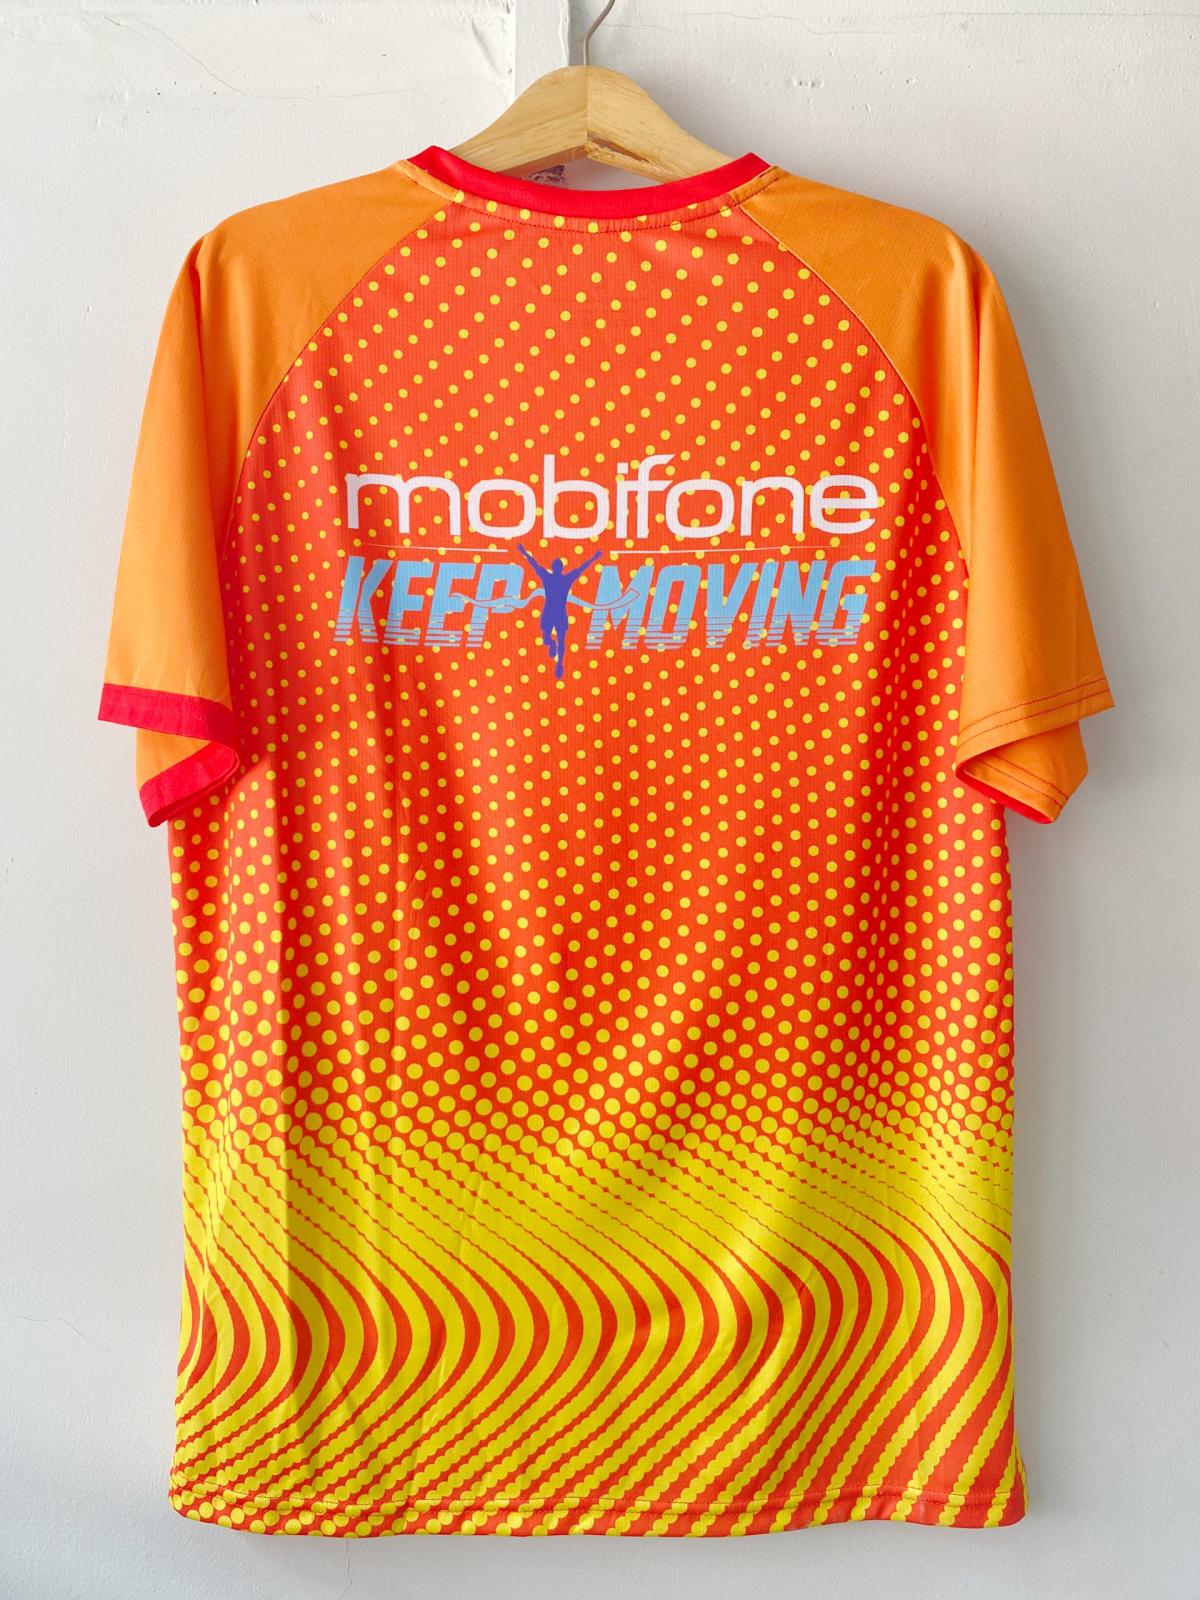 Đồng phục thể thao chạy bộ Mobifone - Keep moving #1